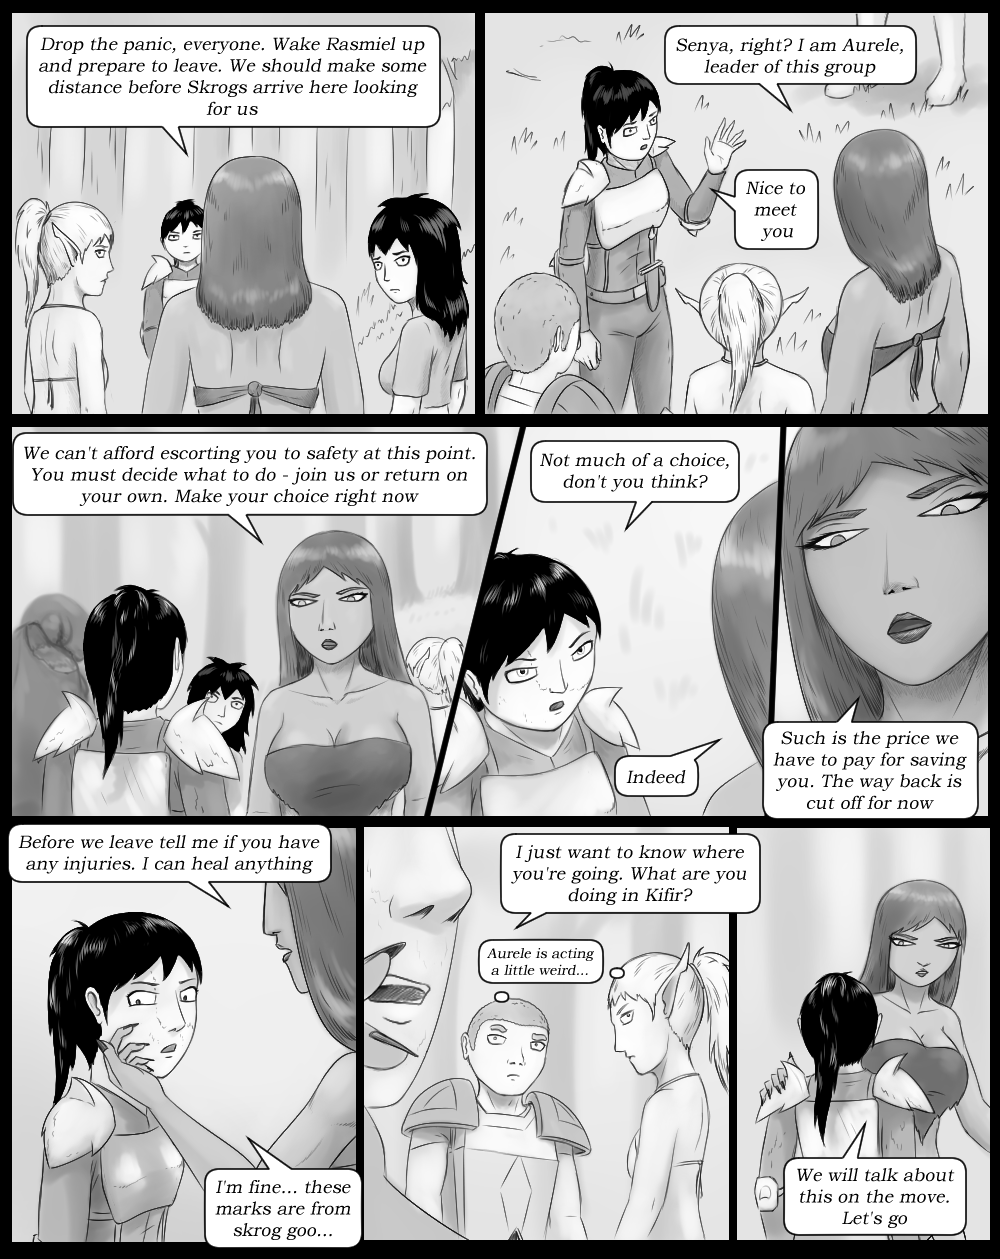 Page 5 - No Choice